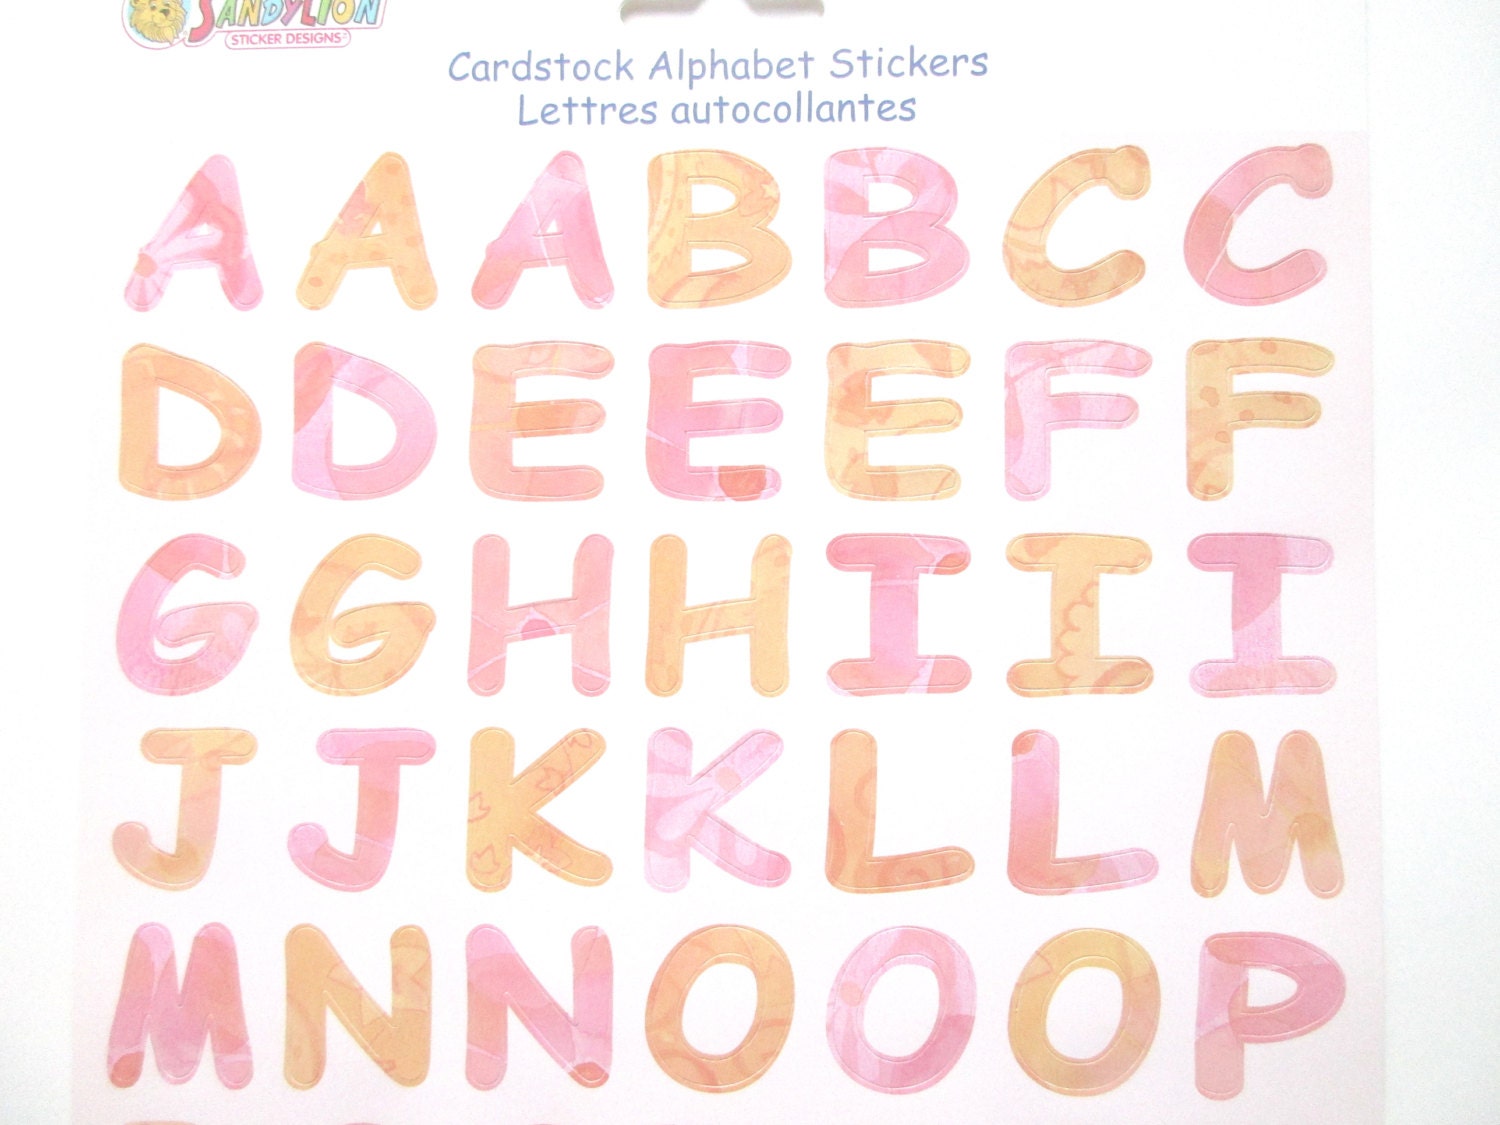 Vintage Cursive Acid Free Gold, Silver, Black Alphabet Letter  Stickers-Cursive Letter Stickers-Scrapbook Letter Stickers-Alphabet Stickers